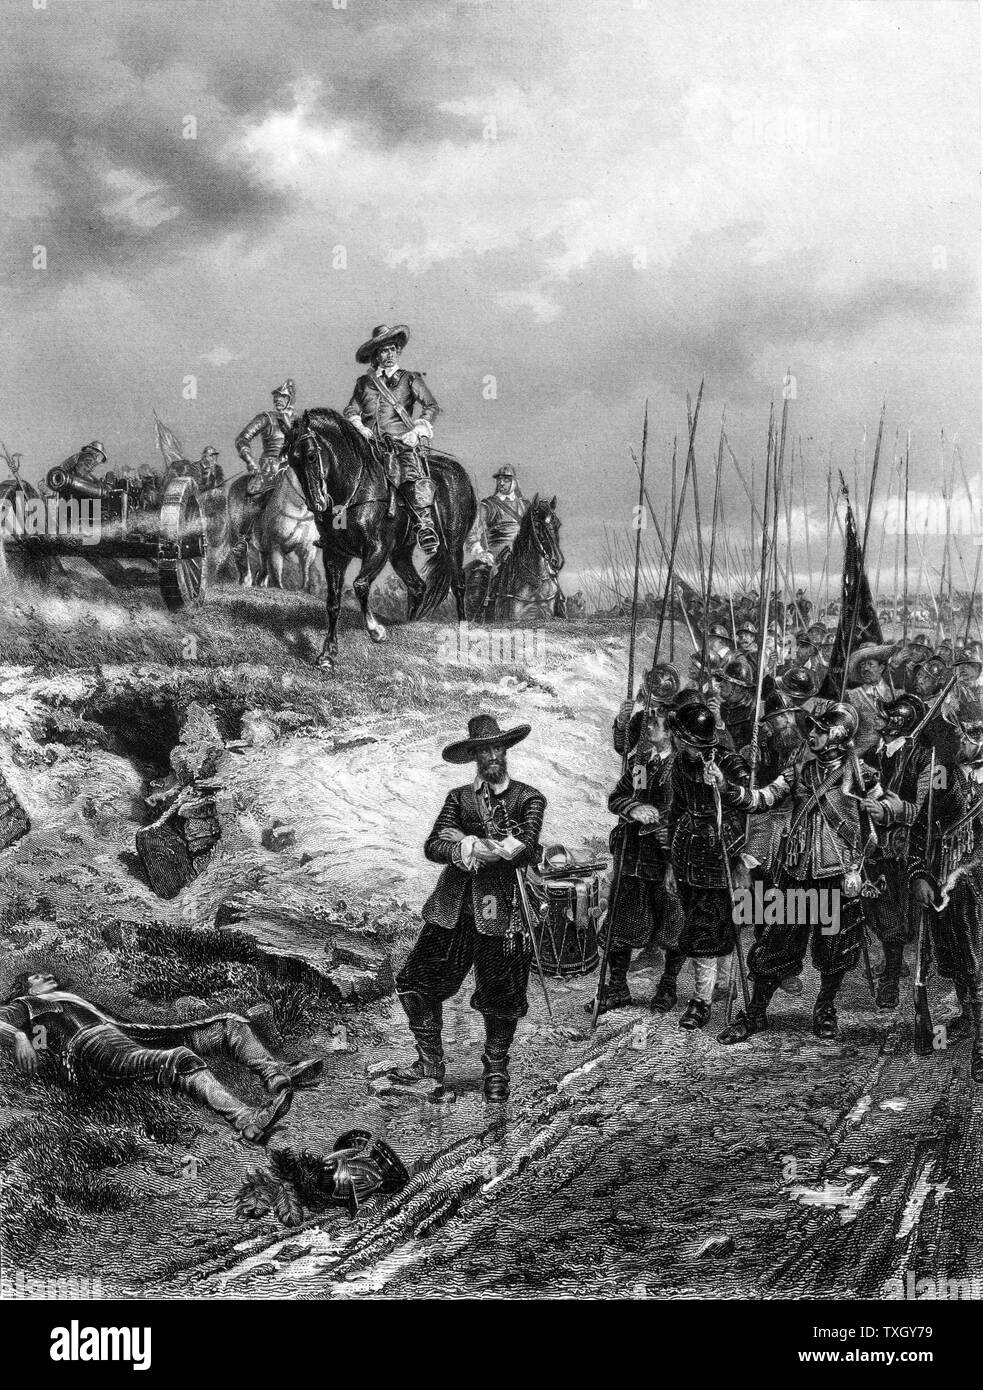 Englisch Bürgerkriege: Oliver Cromwell (1599-1658) in der Schlacht von Marston Moor, 2. Juli 1644 Parlamentarier besiegten Royalisten unter Prinz Rupert Gravur Stockfoto